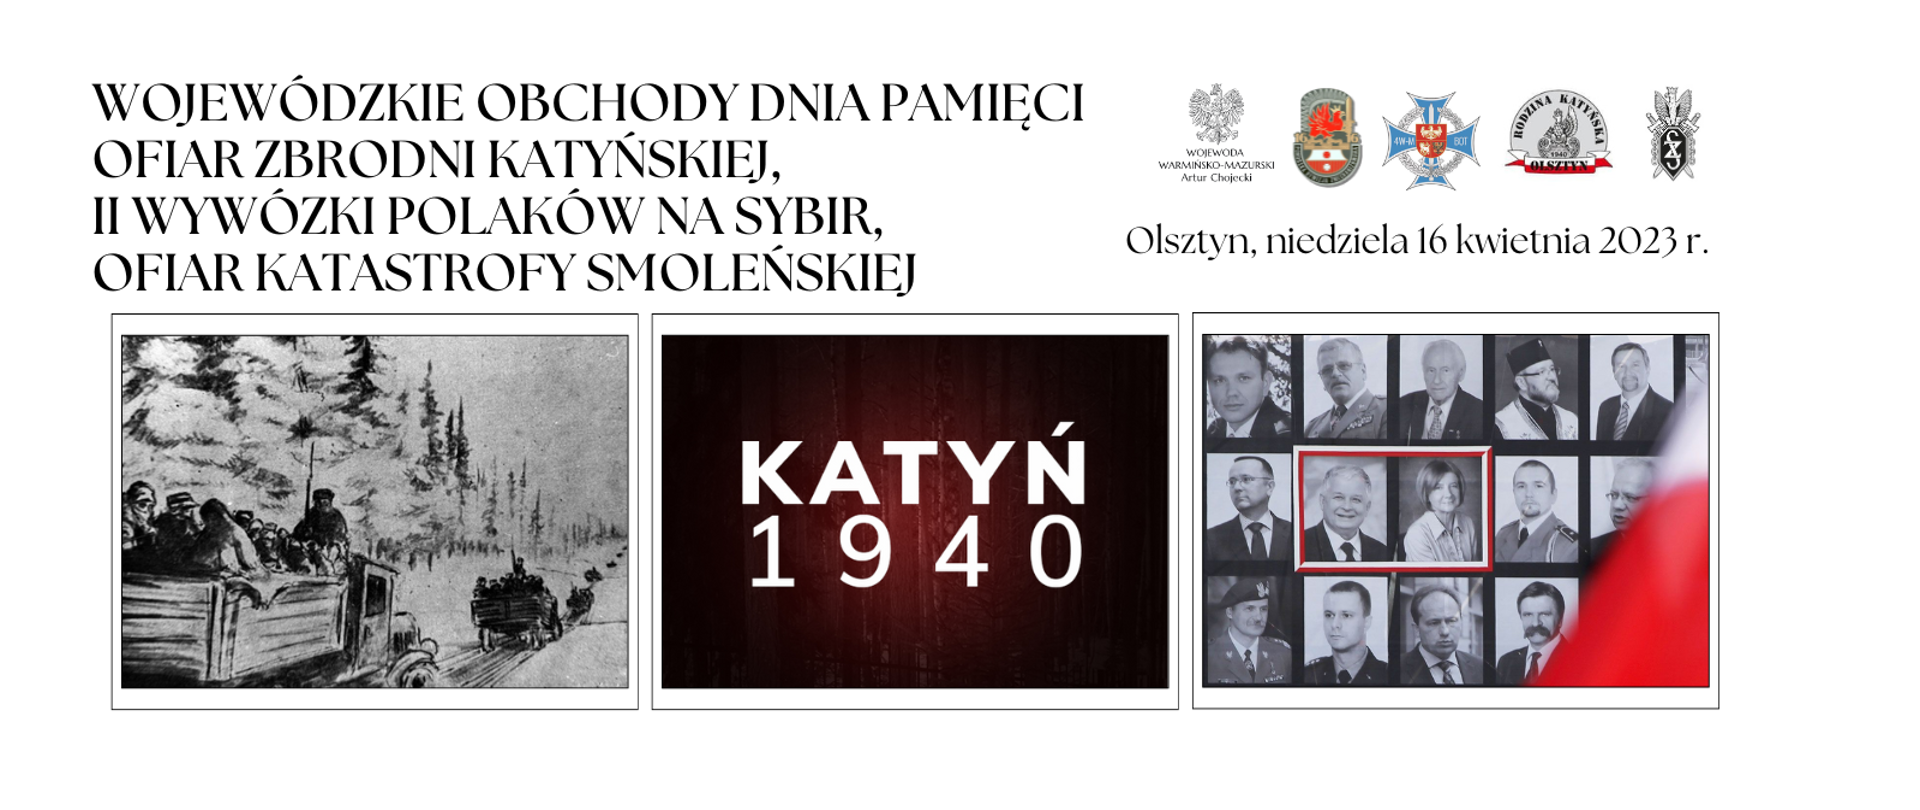 Wojewódzkie Obchody Dnia Pamięci Ofiar Zbrodni Katyńskiej, Katastrofy Smoleńskiej oraz II Wywózki Polaków na Sybir